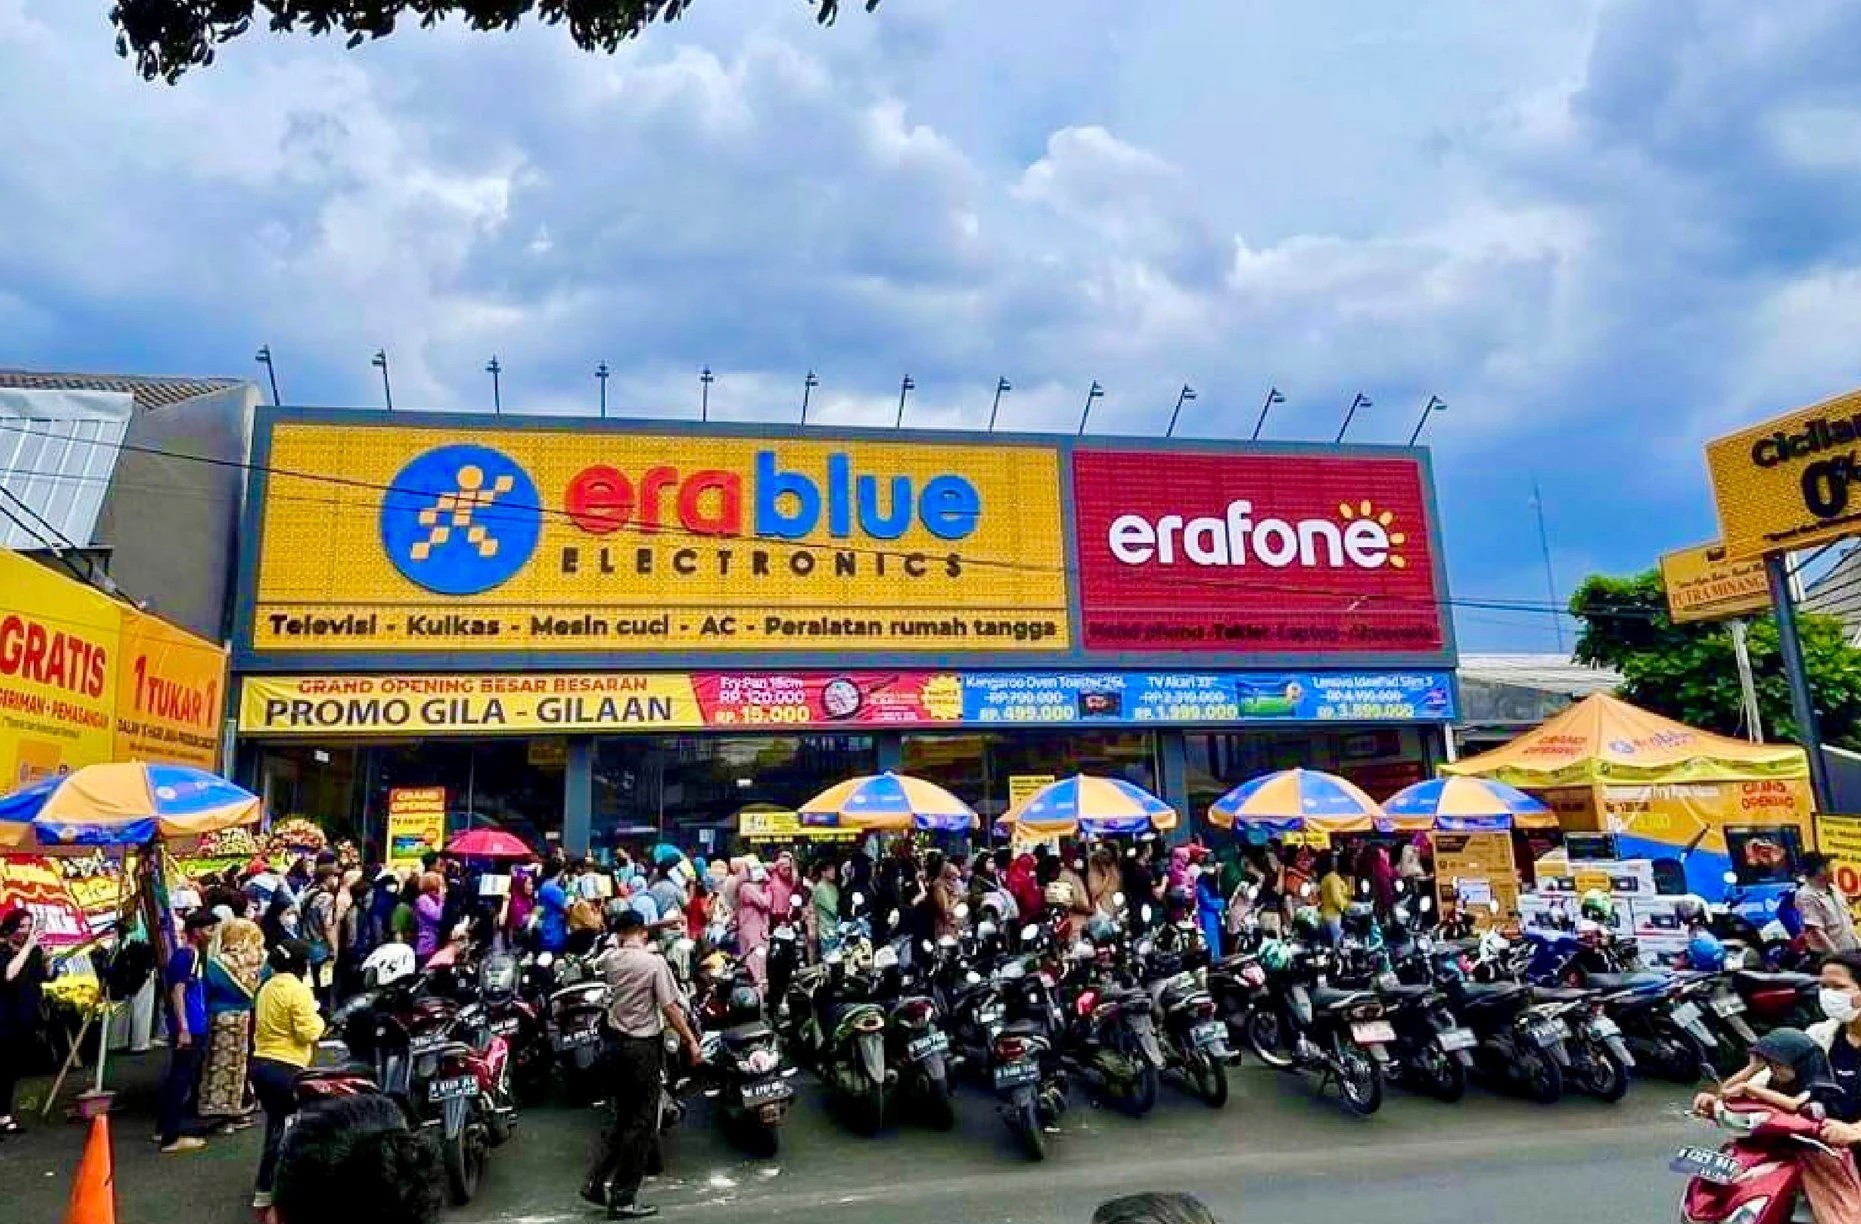 
Có thể thấy, việc MWG mới mở có 5 cửa hàng Era Blue trong thời gian 5 tháng chào sân đã khiến cho người khác cảm thấy ngạc nhiên
